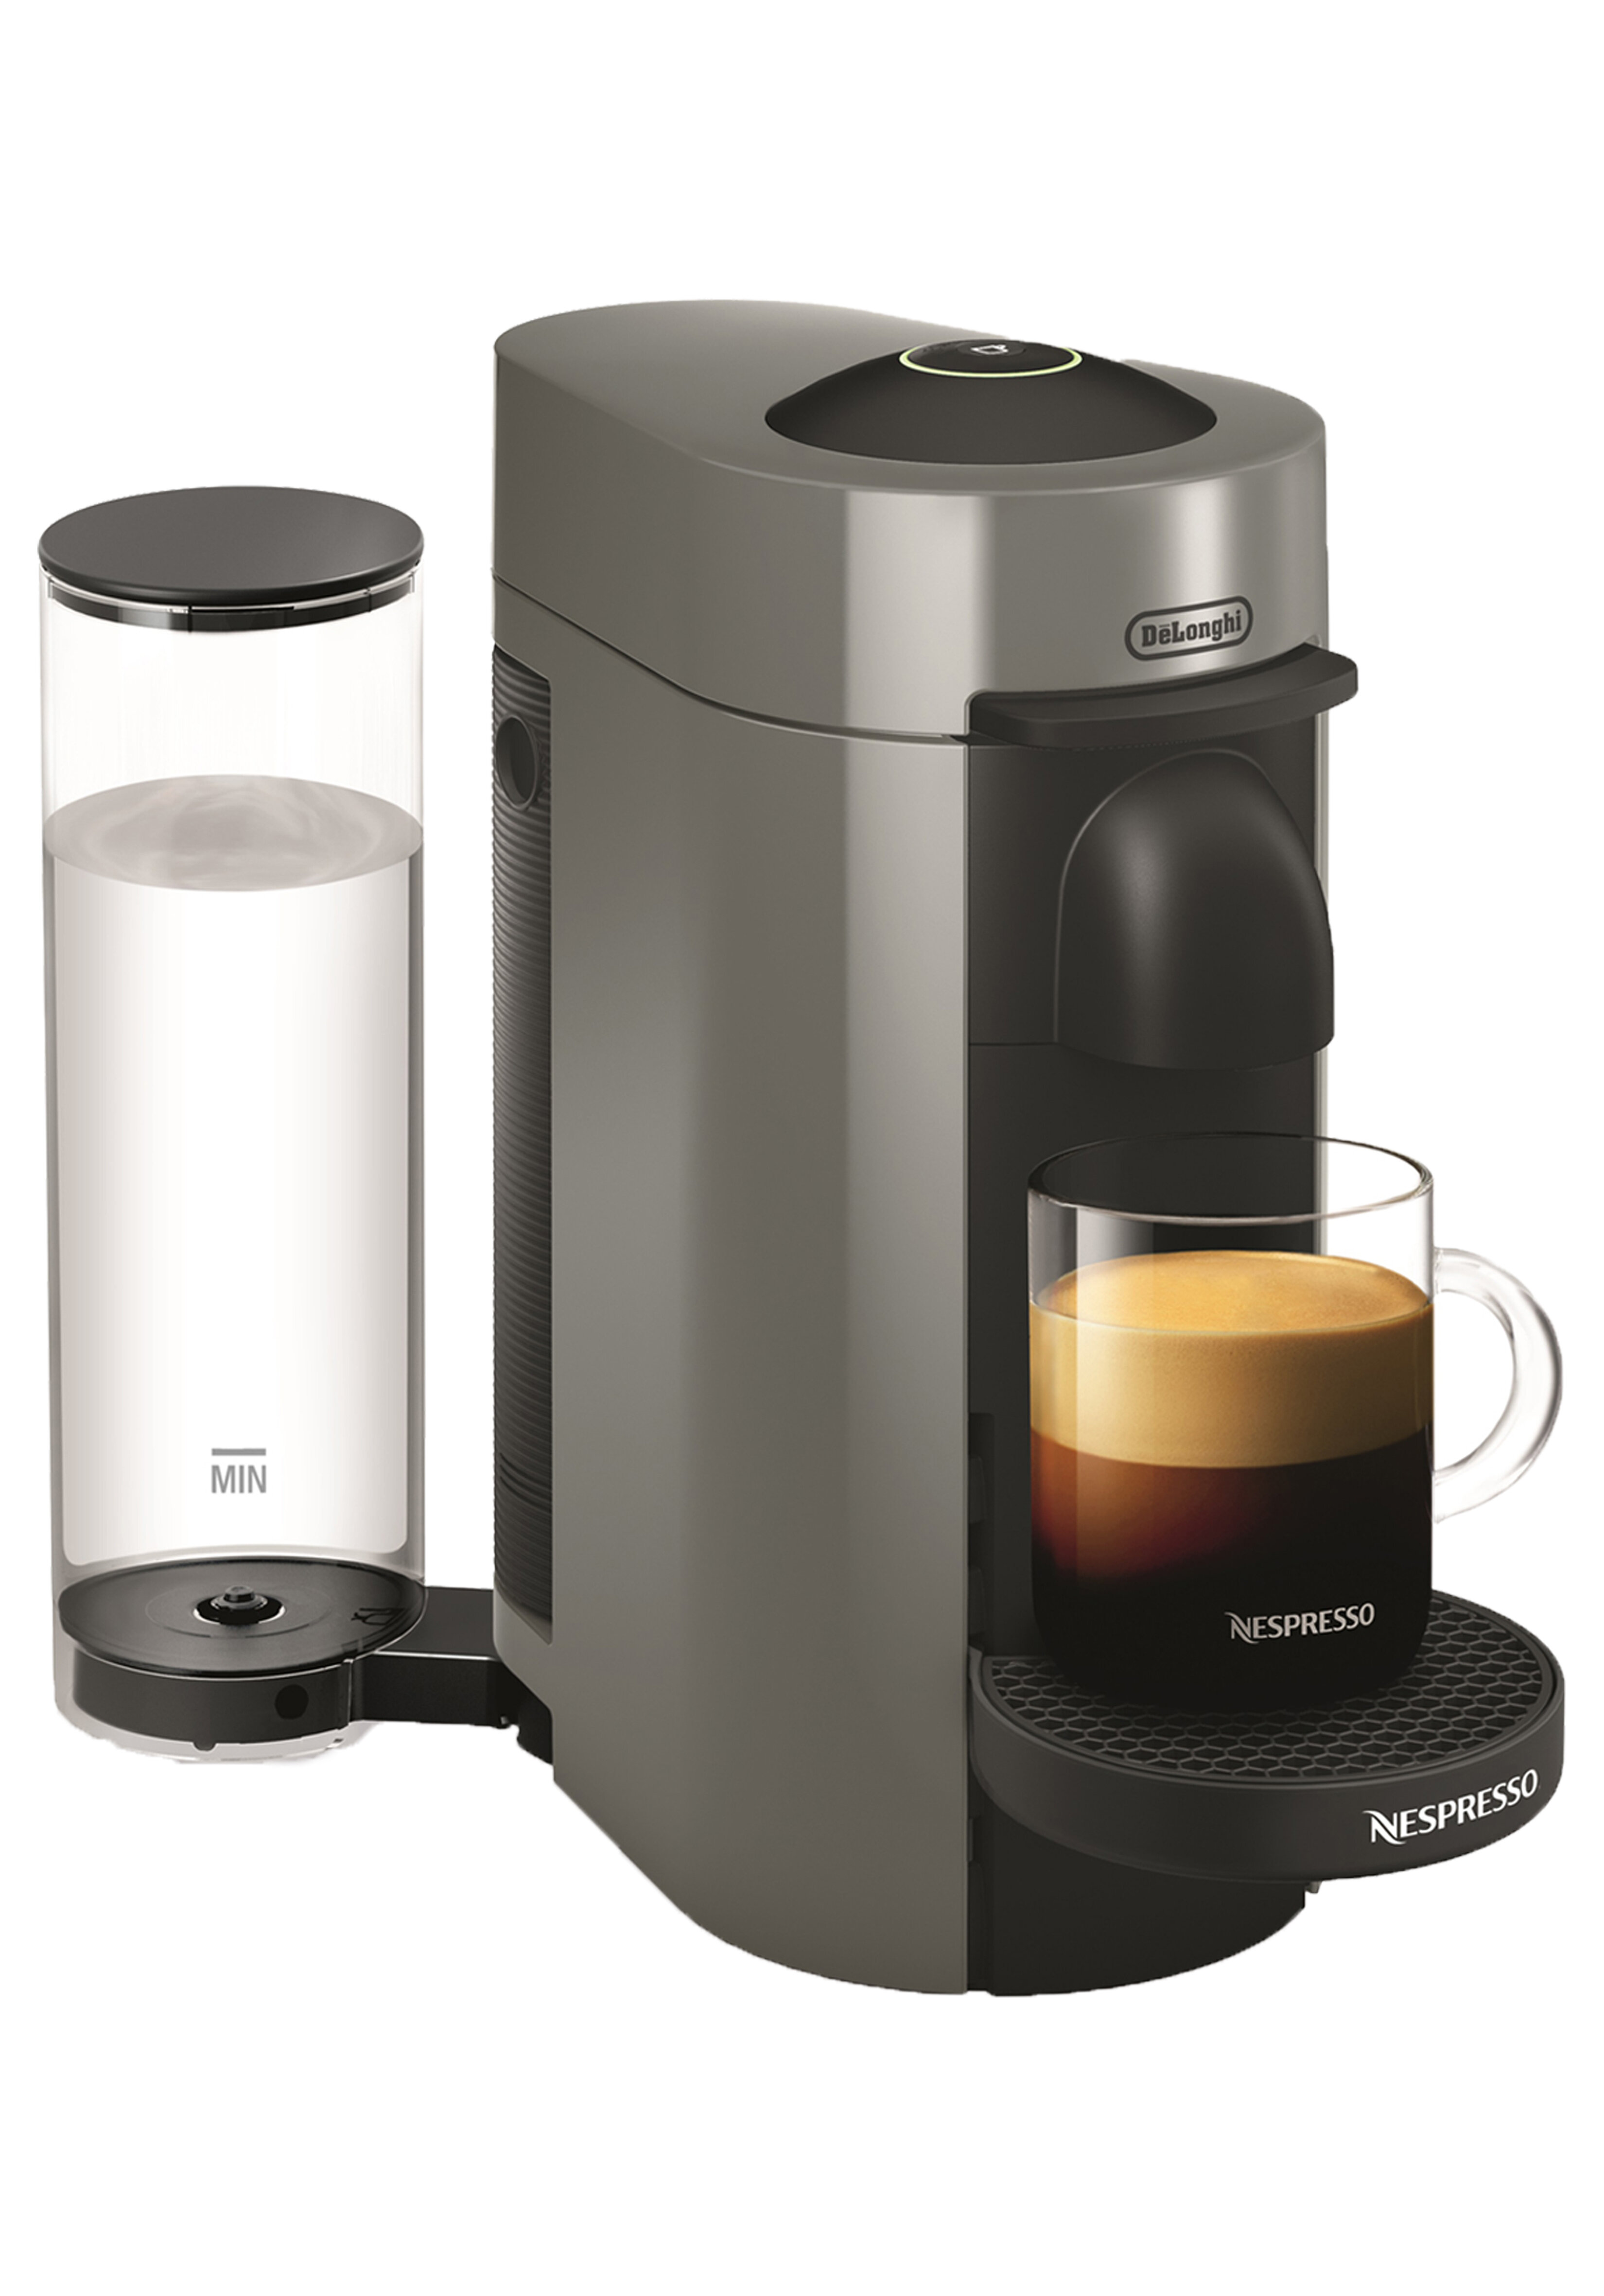 DeLonghi Vertuo Plus Grey 1 Serve Coffee Maker and Espresso Machine by Nespresso 